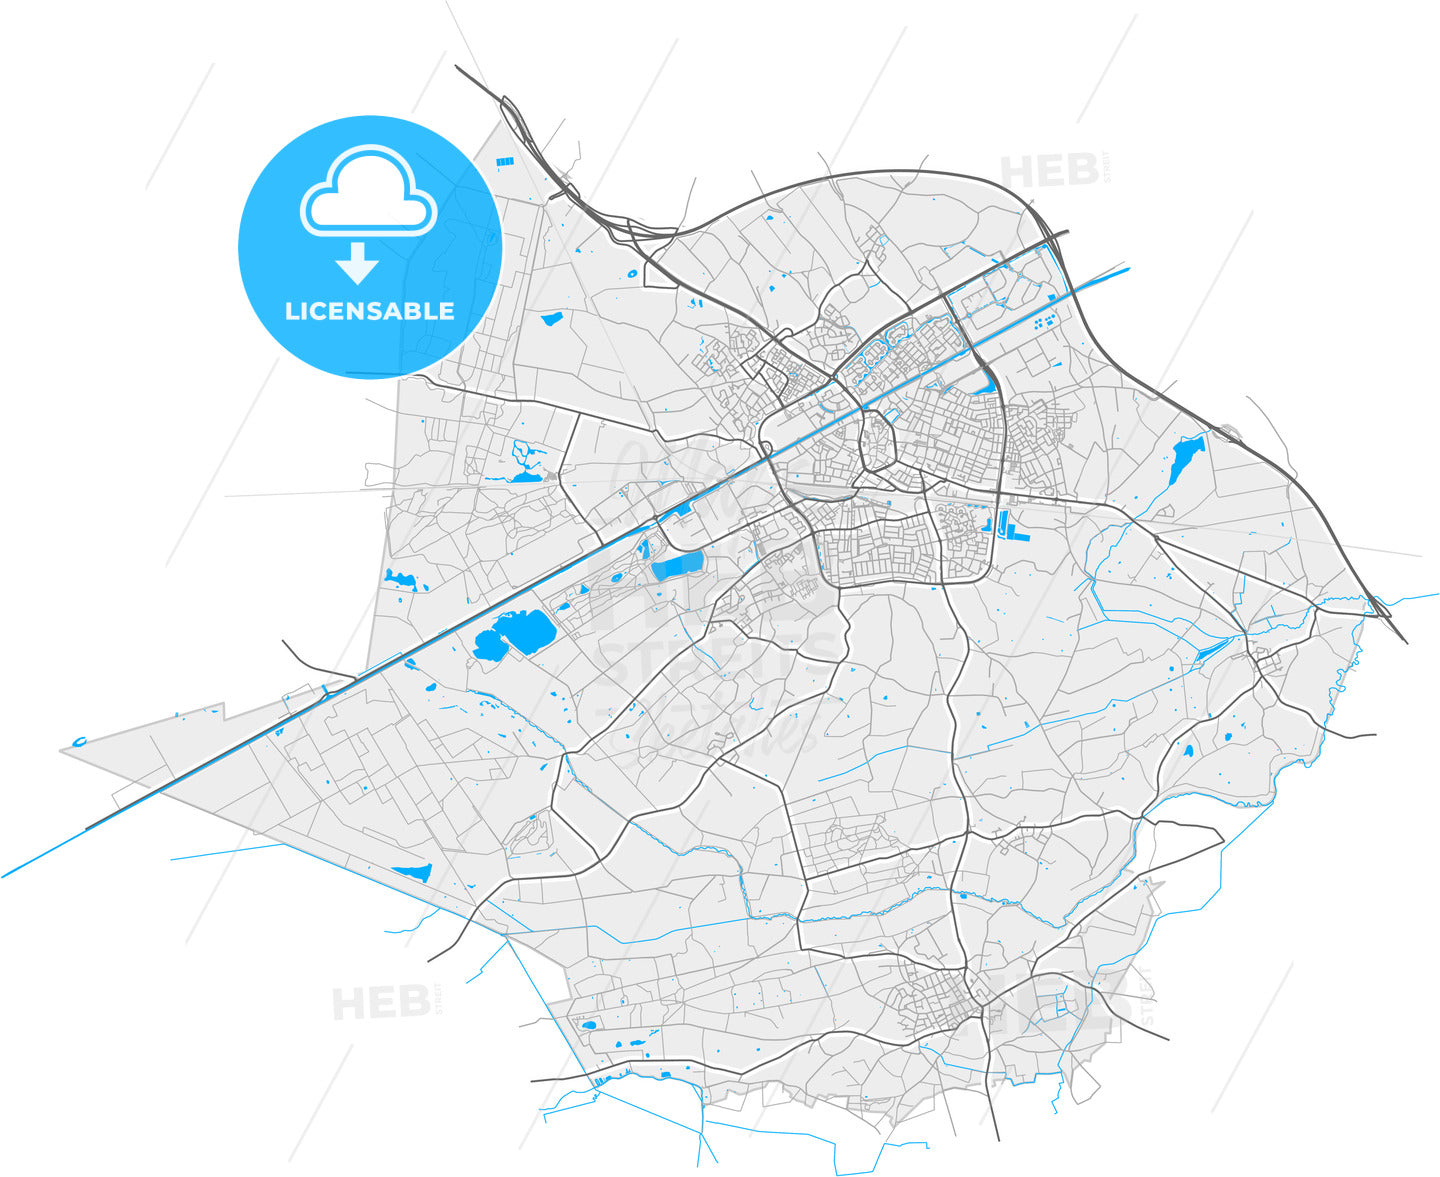 Weert, Limburg, Netherlands, high quality vector map